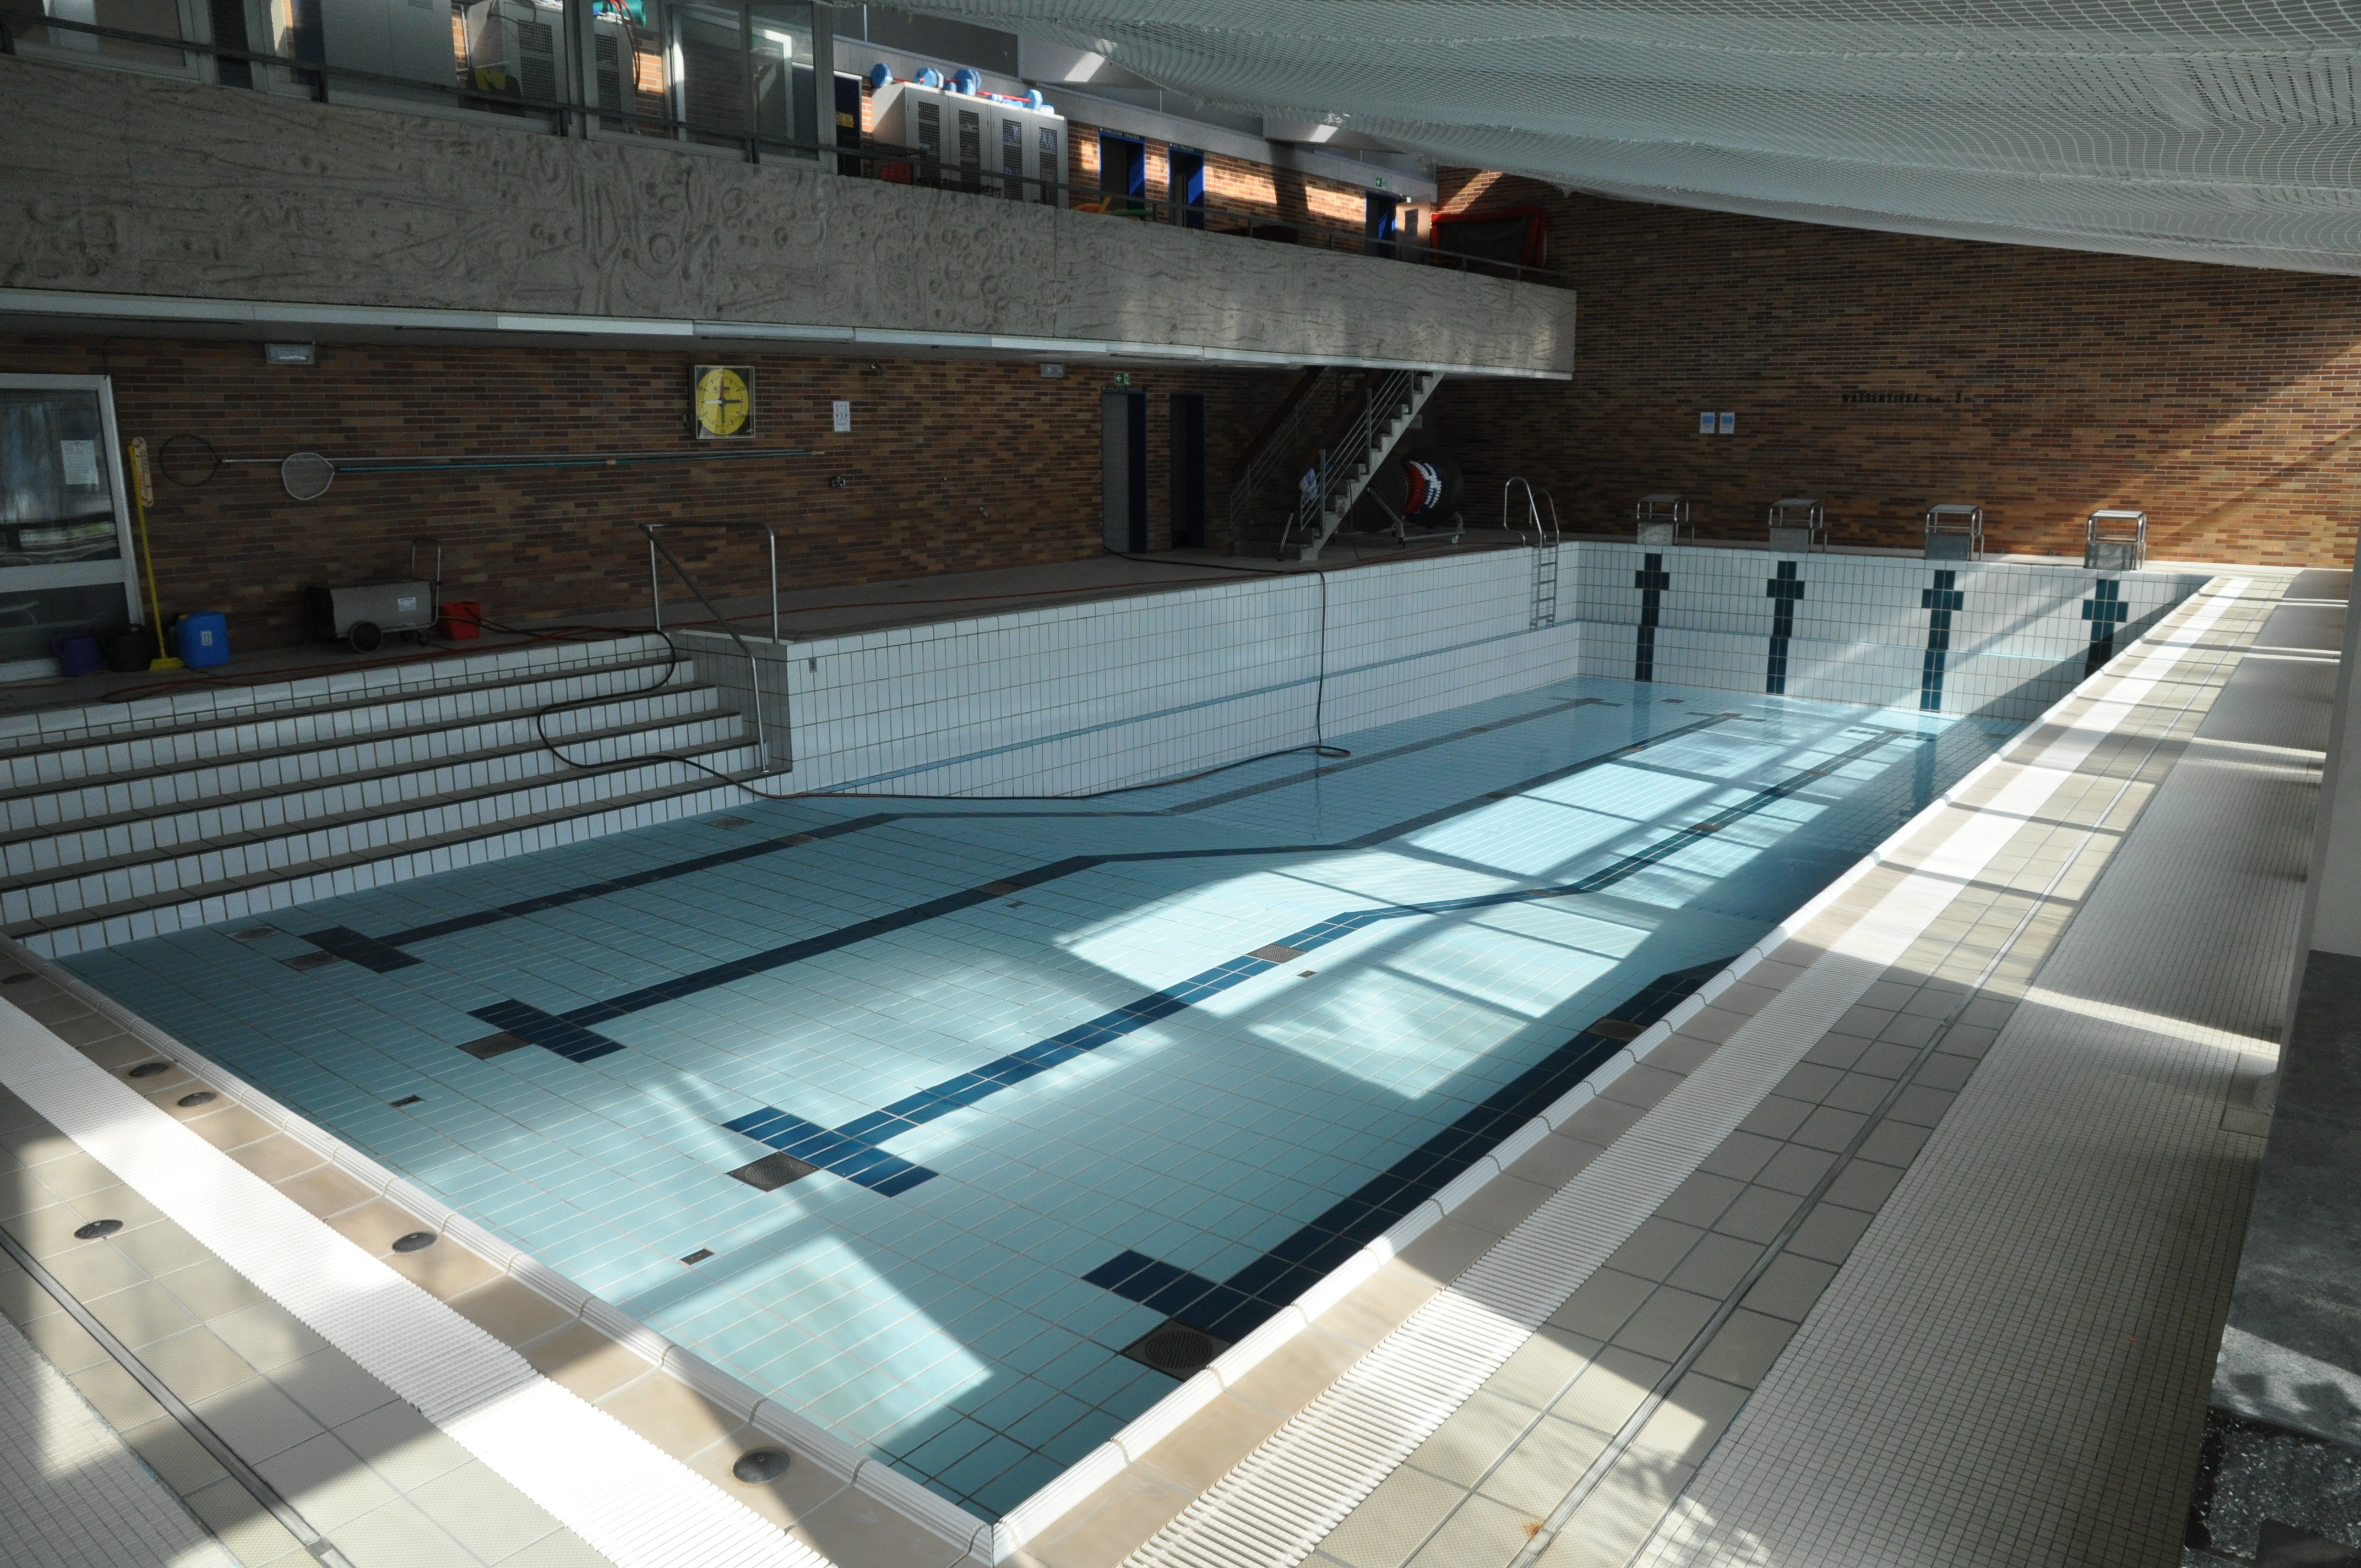 Das Bild zeigt ein leeres Schwimmbecken in einem Hallenbad.